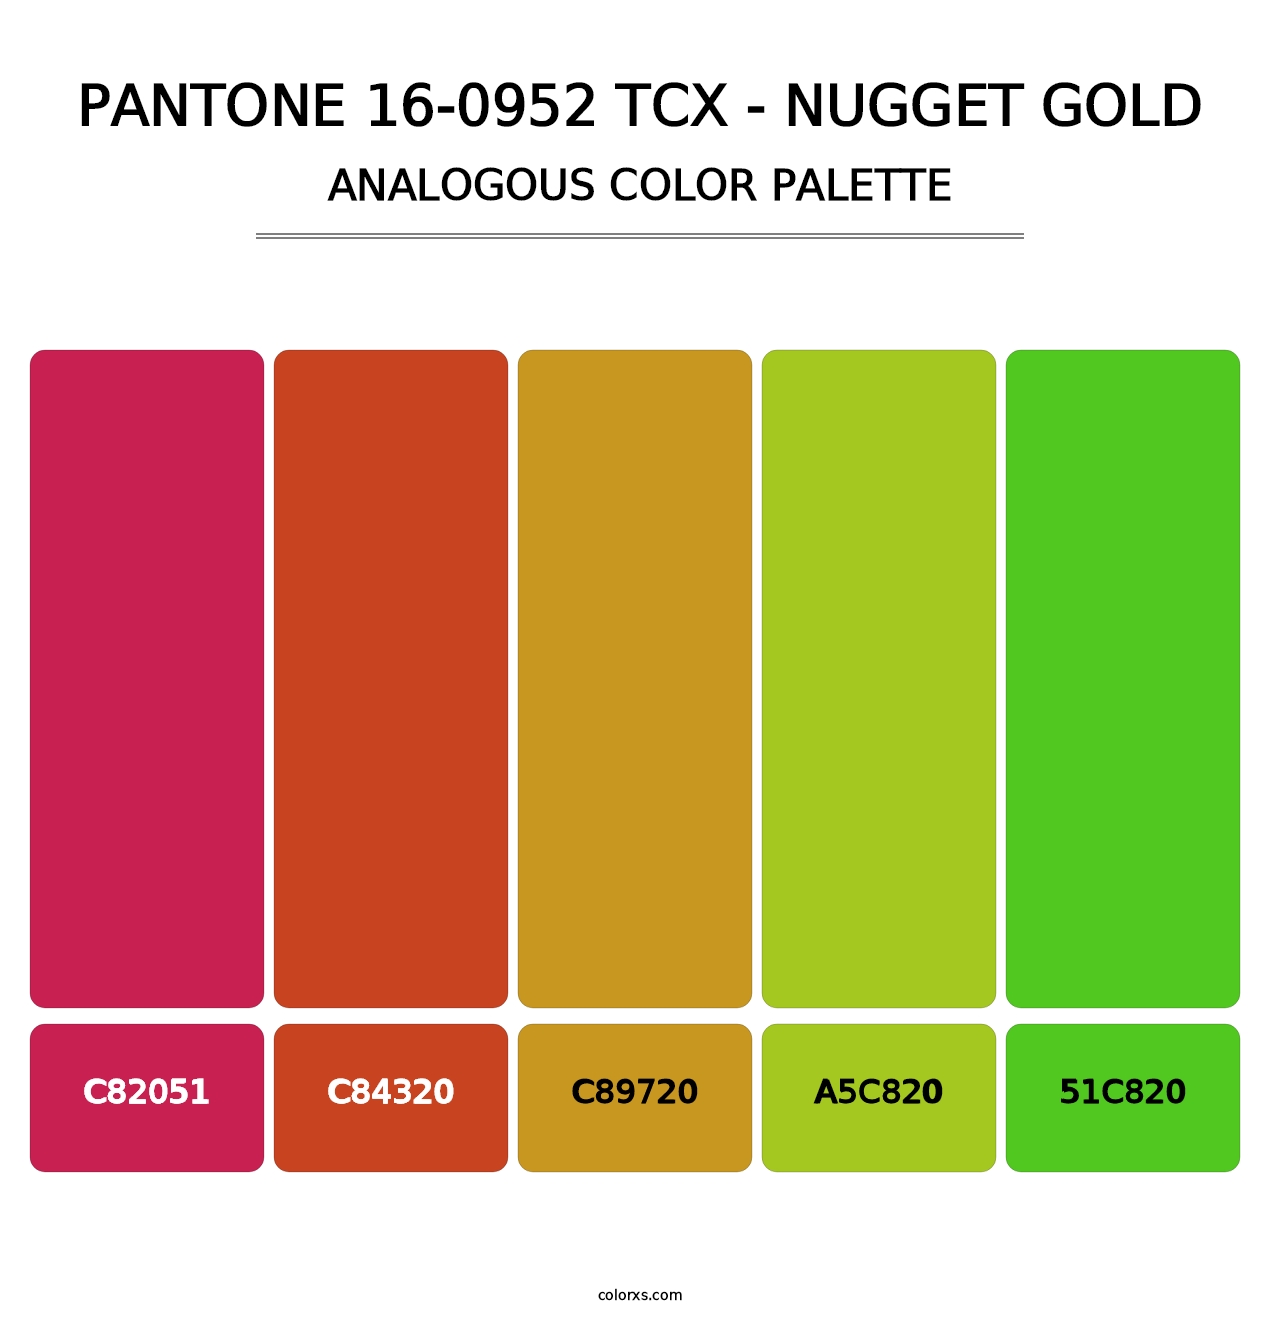 PANTONE 16-0952 TCX - Nugget Gold - Analogous Color Palette